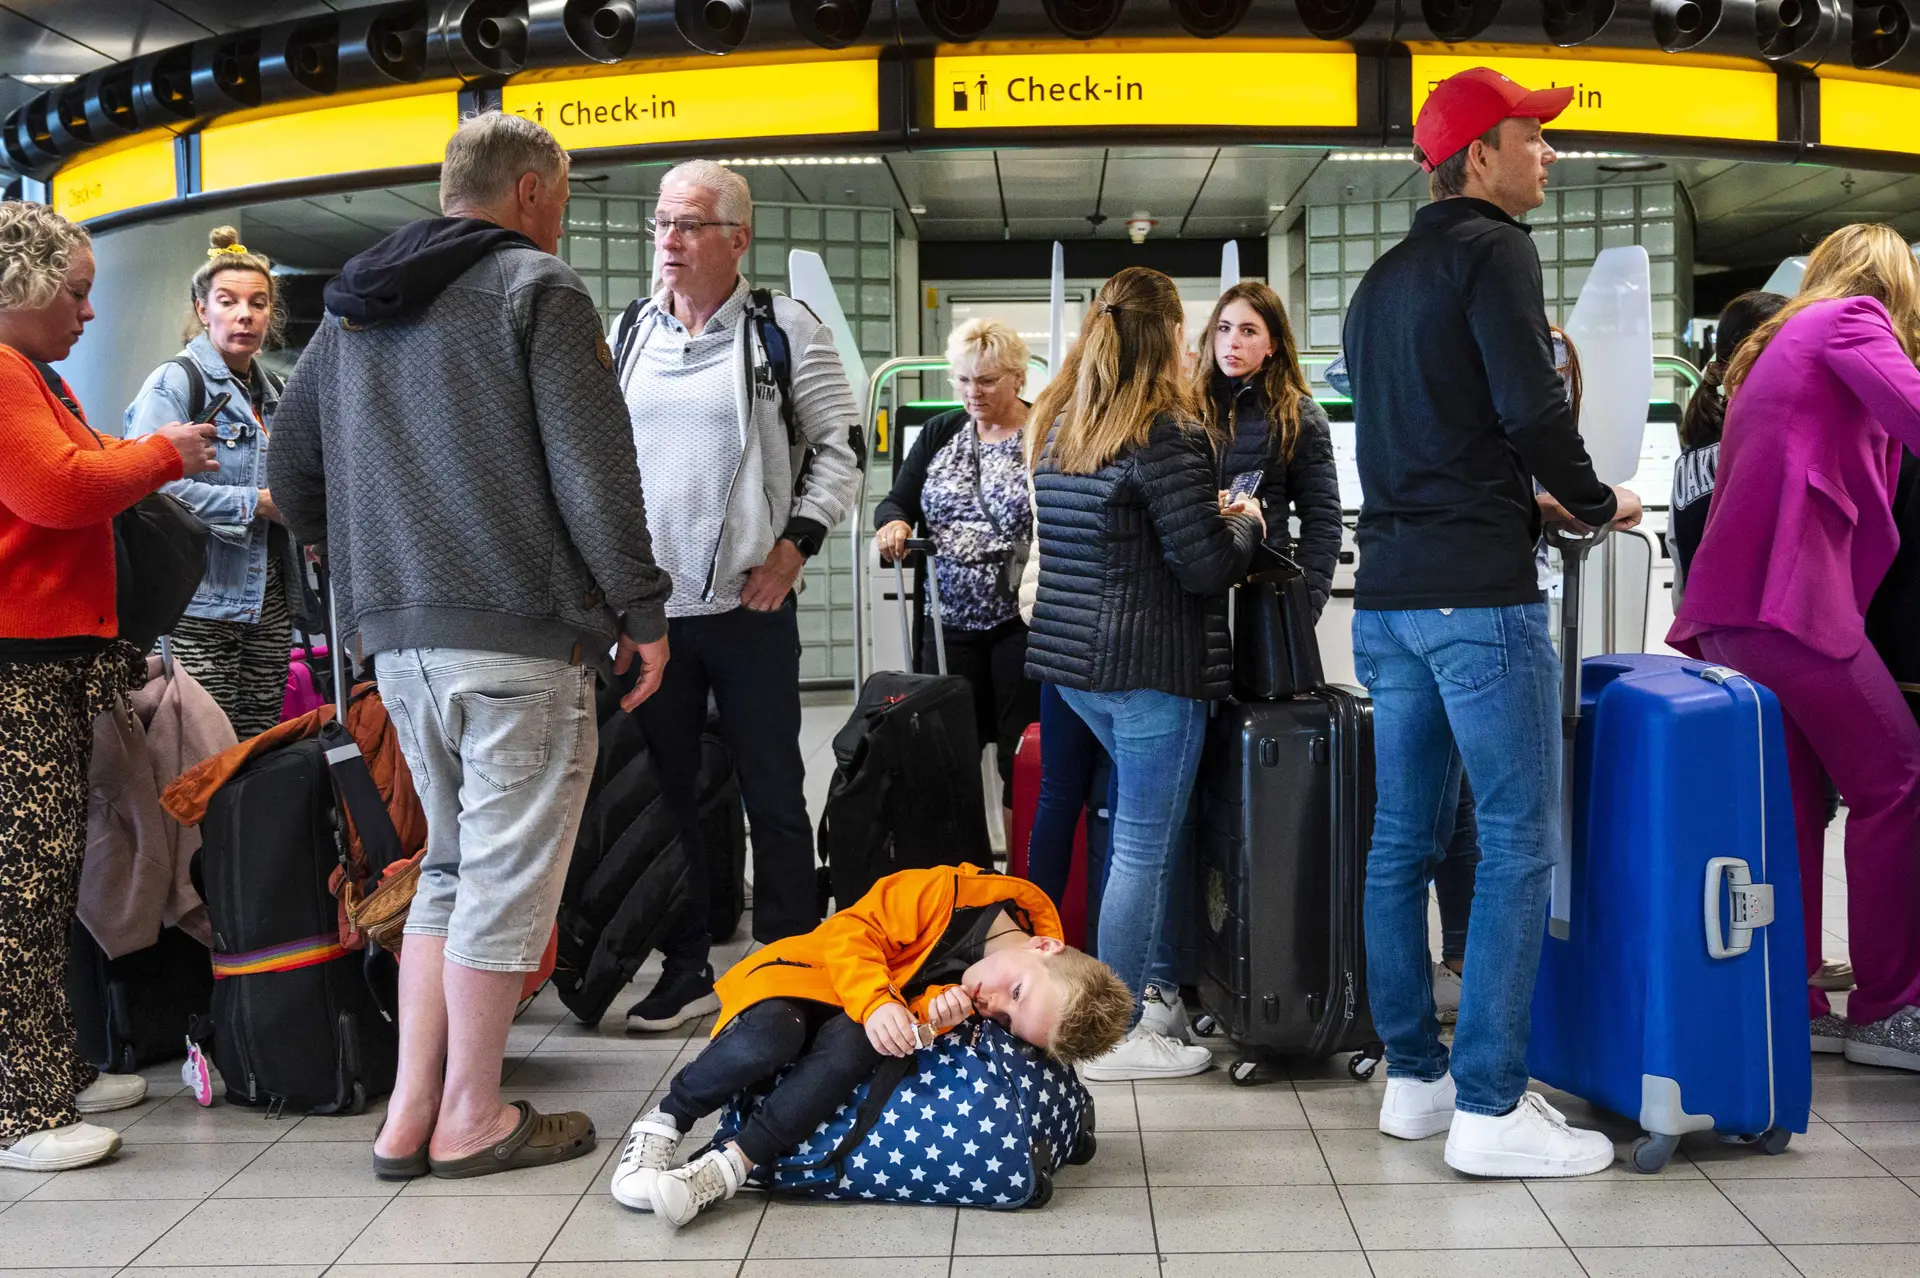 Aeroporto de Amesterdão vai continuar a limitar passageiros até março de 2023